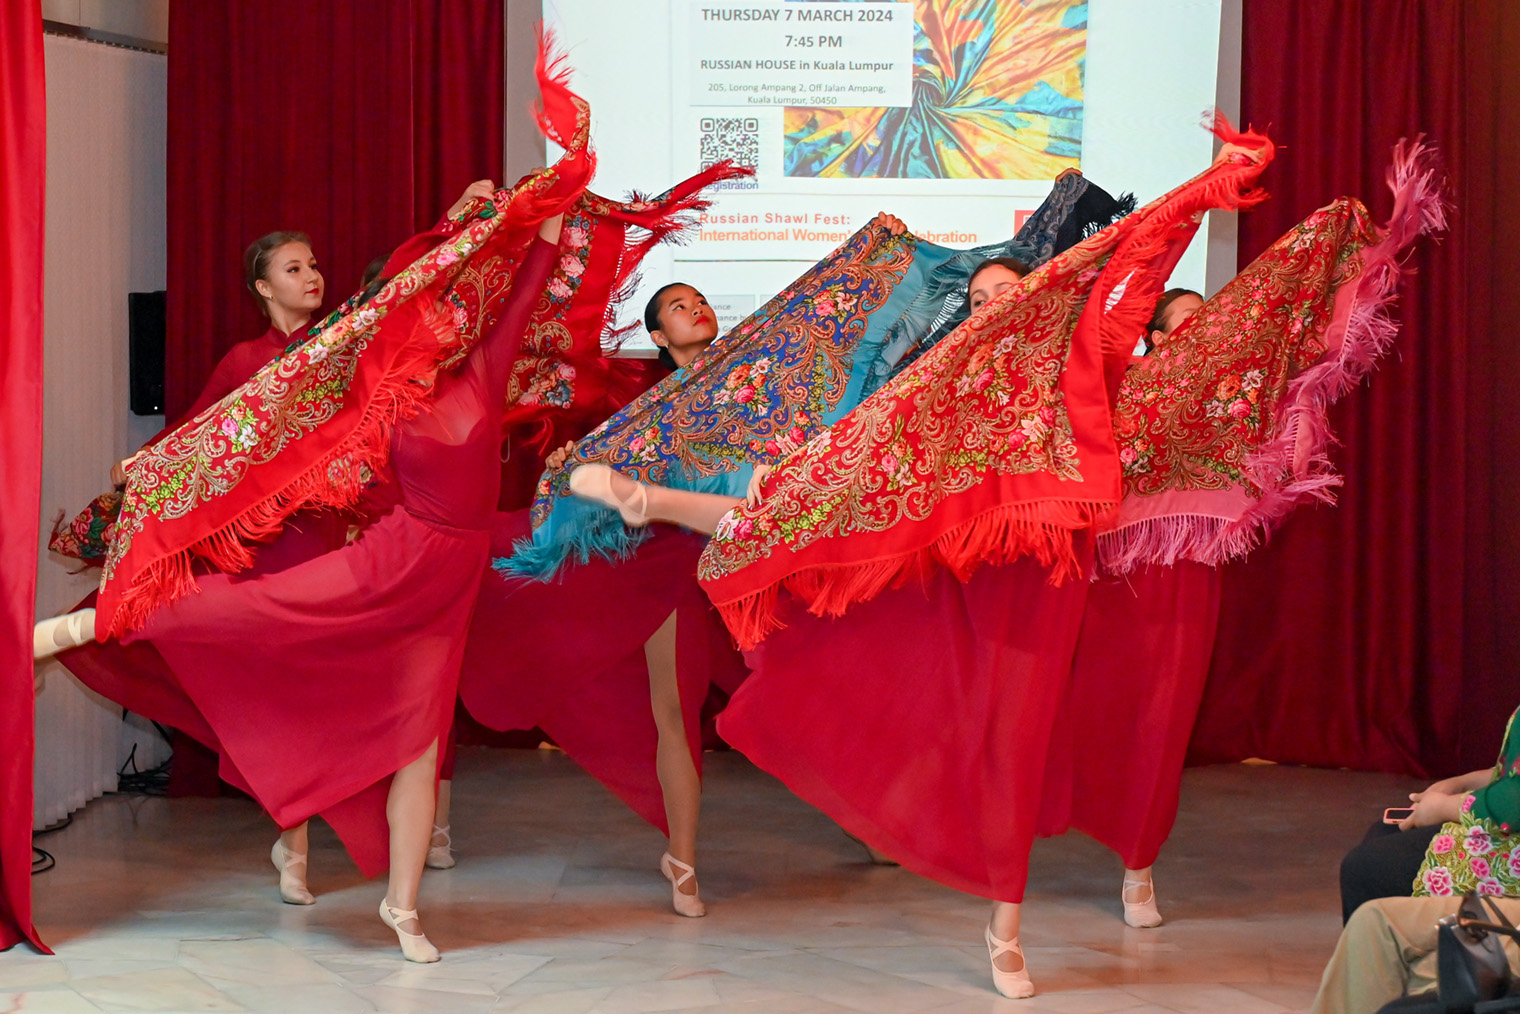 Мероприятие открыли танцем с платками. Фотография: Русский дом в Куала-Лумпуре